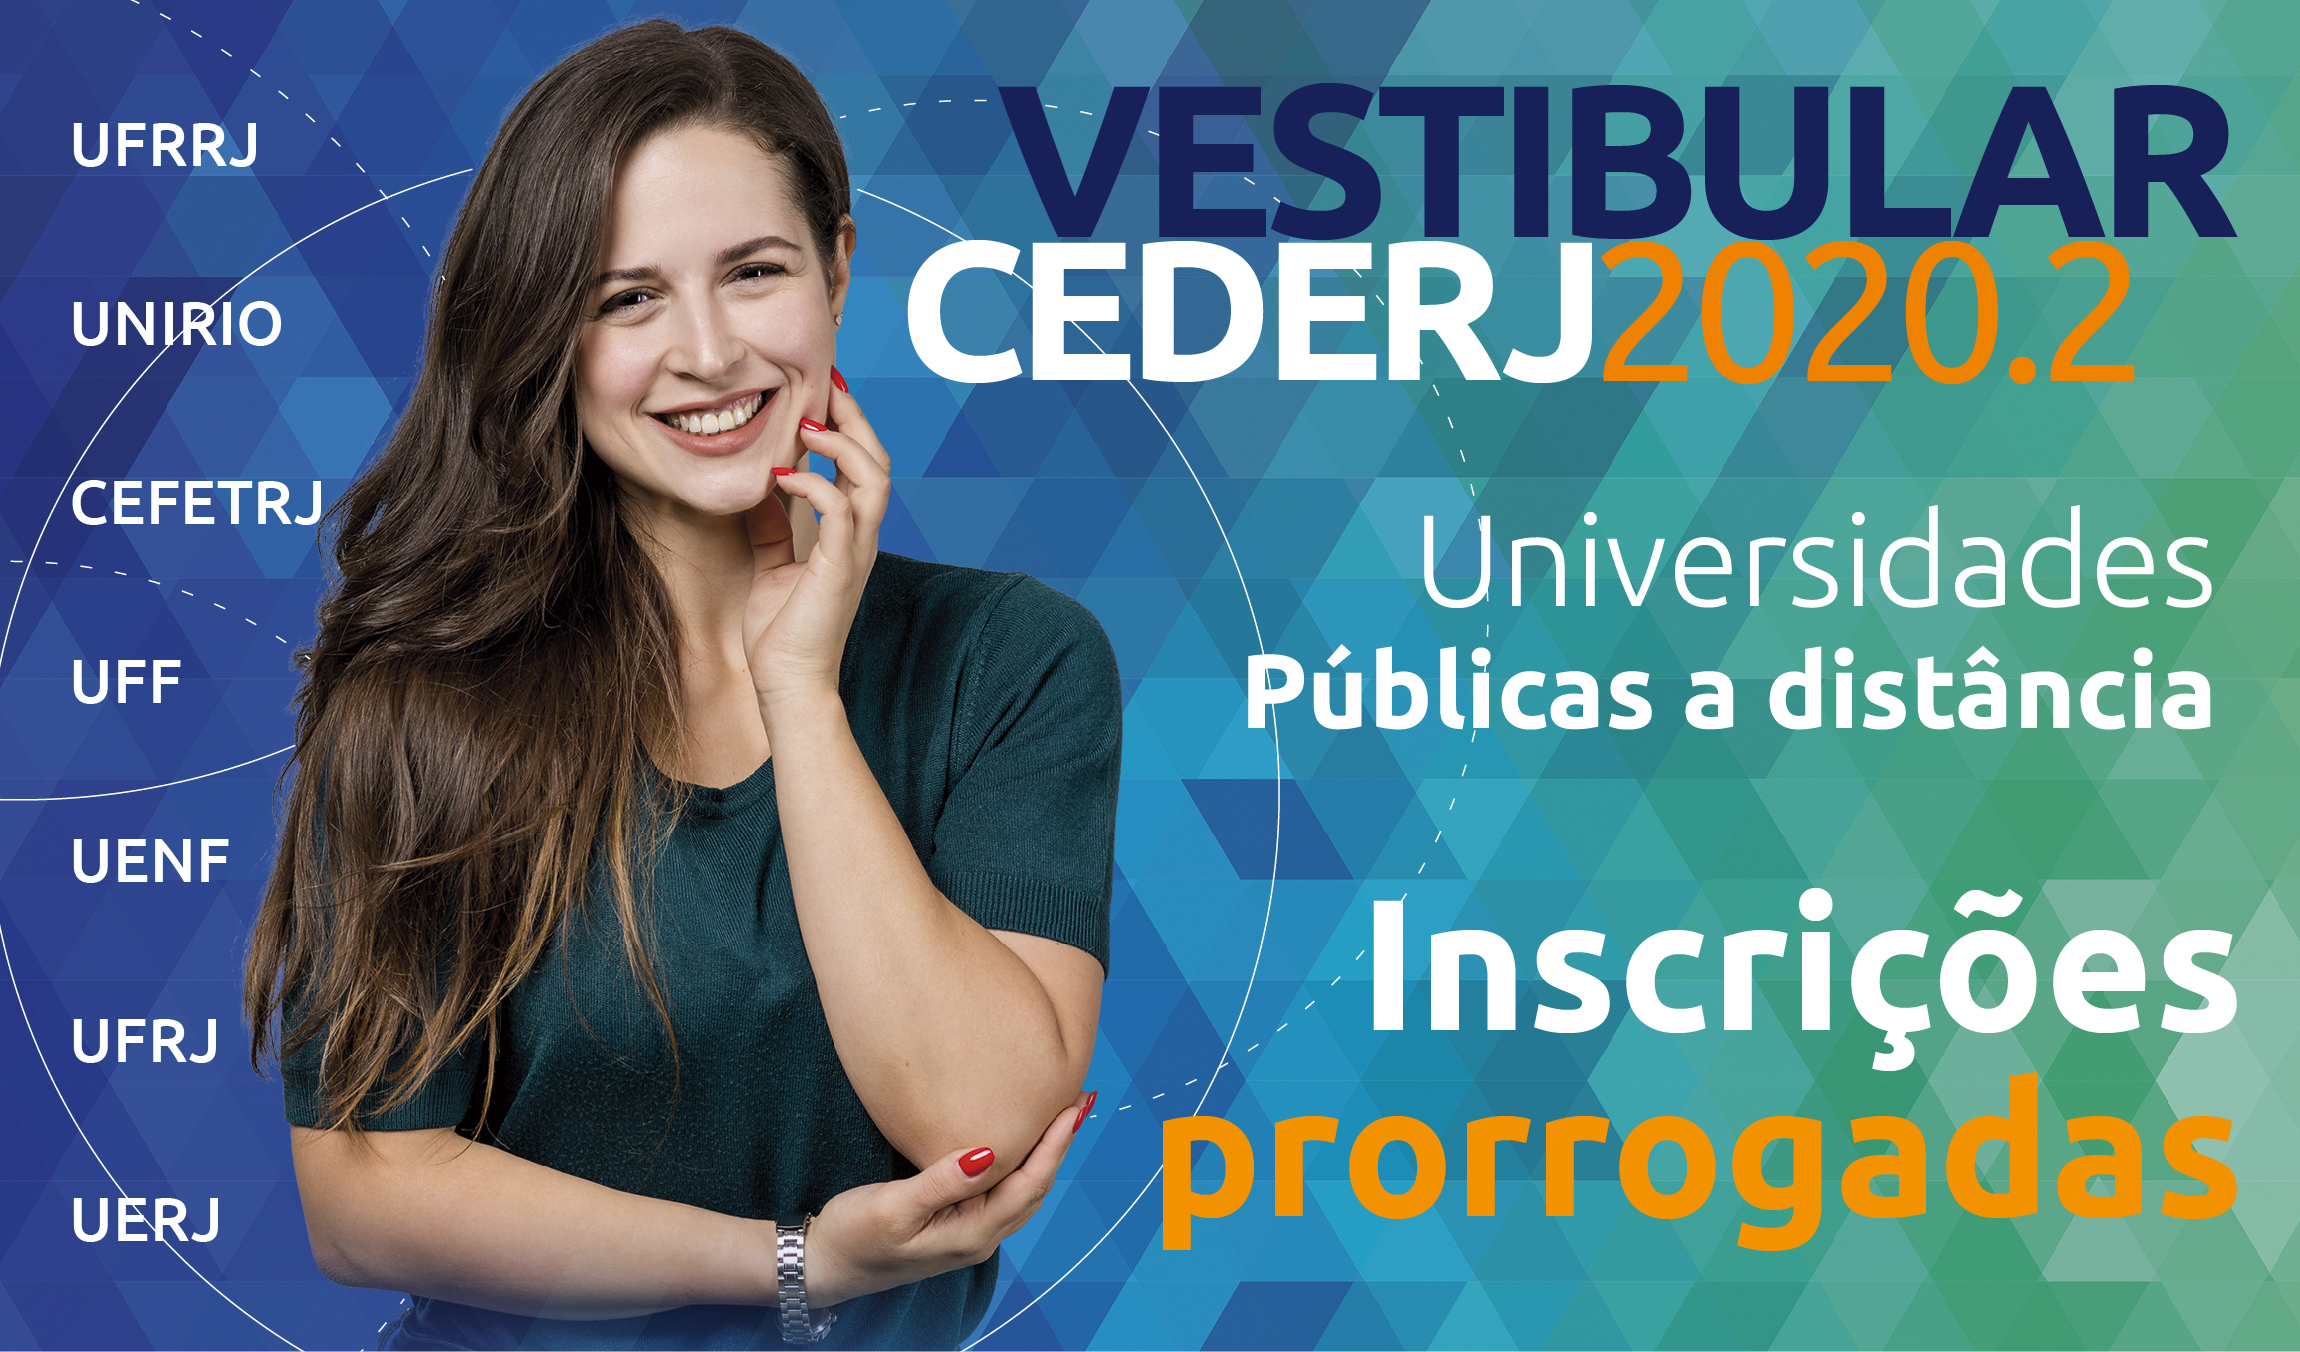 Prorrogada a inscrição para o Vestibular Cederj 2020.2 - Fundação CECIERJ